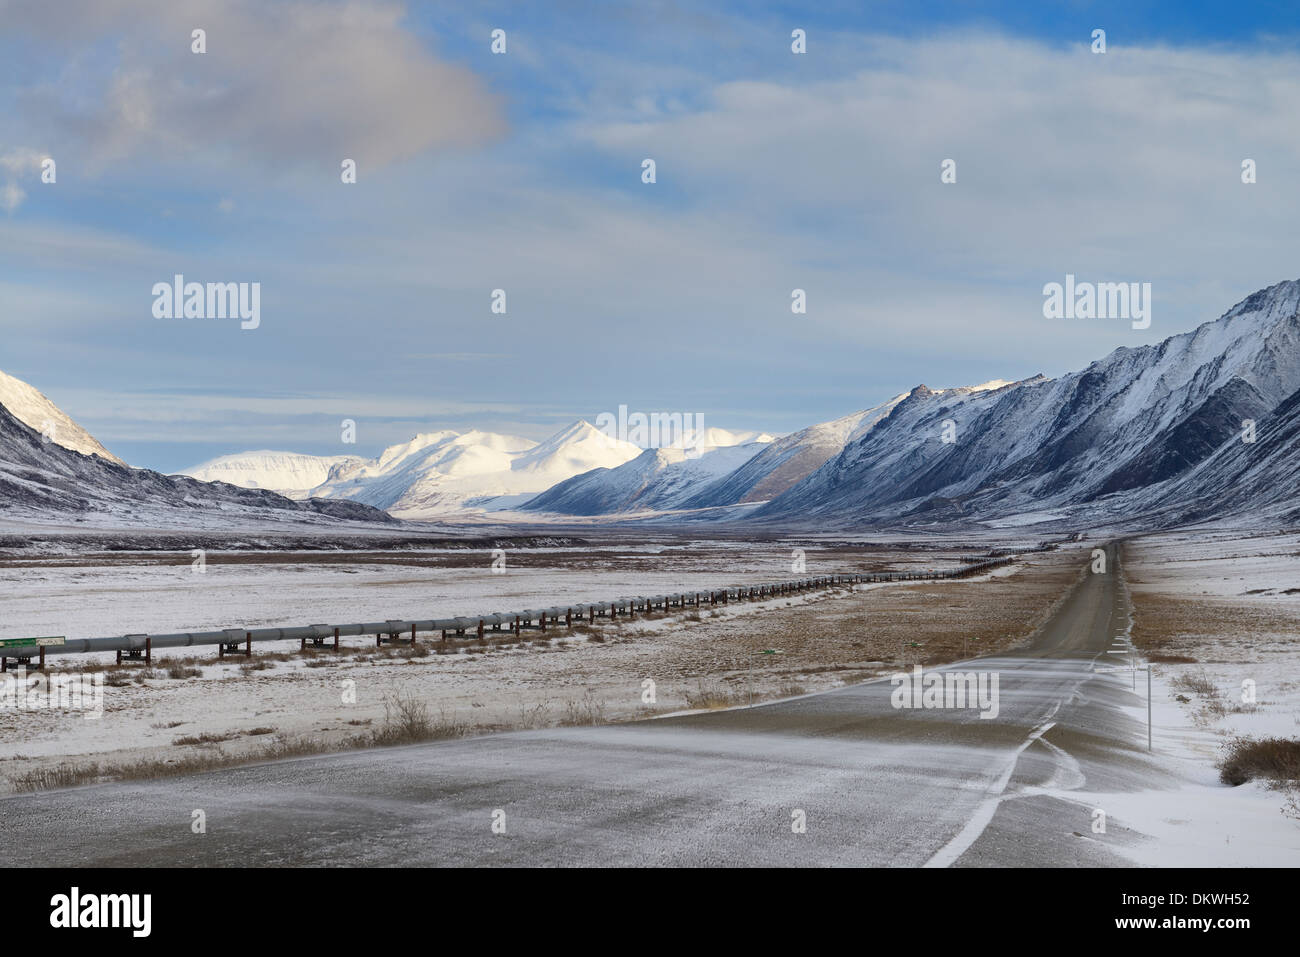 Dalton Highway nevados y oleoducto alyeska en el brooks Range Mountains de Alaska, EE.UU. Foto de stock